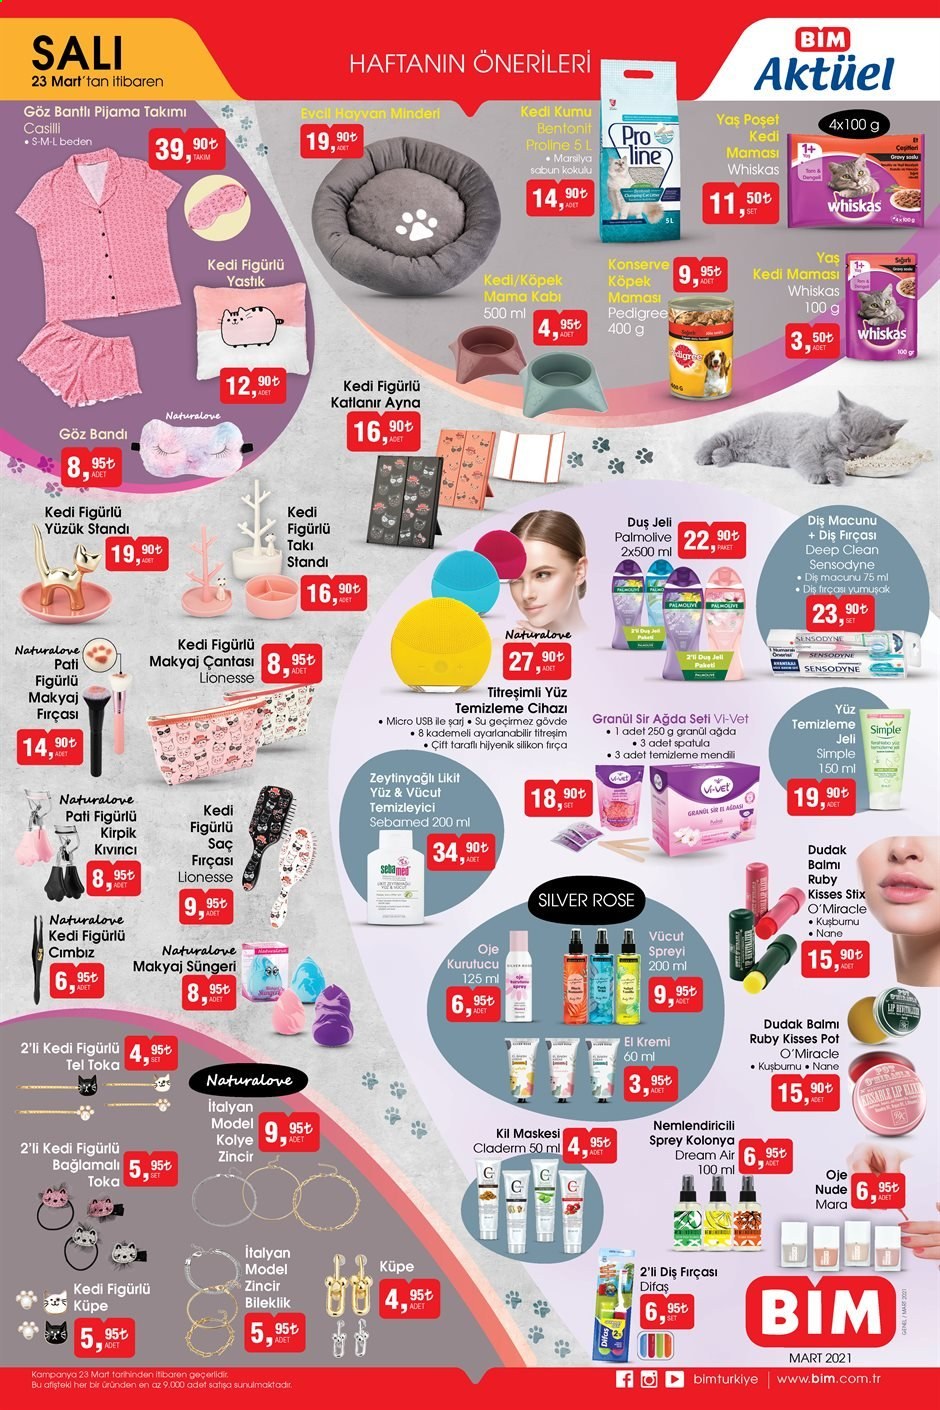 thumbnail - BİM aktüel ürünler, broşür  - Satıştaki ürünler - sabun, duş jeli, diş fırçası, diş macunu, temizleme jeli, temizleyici, kremi, dudak balmı, saç fırçası, ağda. Sayfa 1.